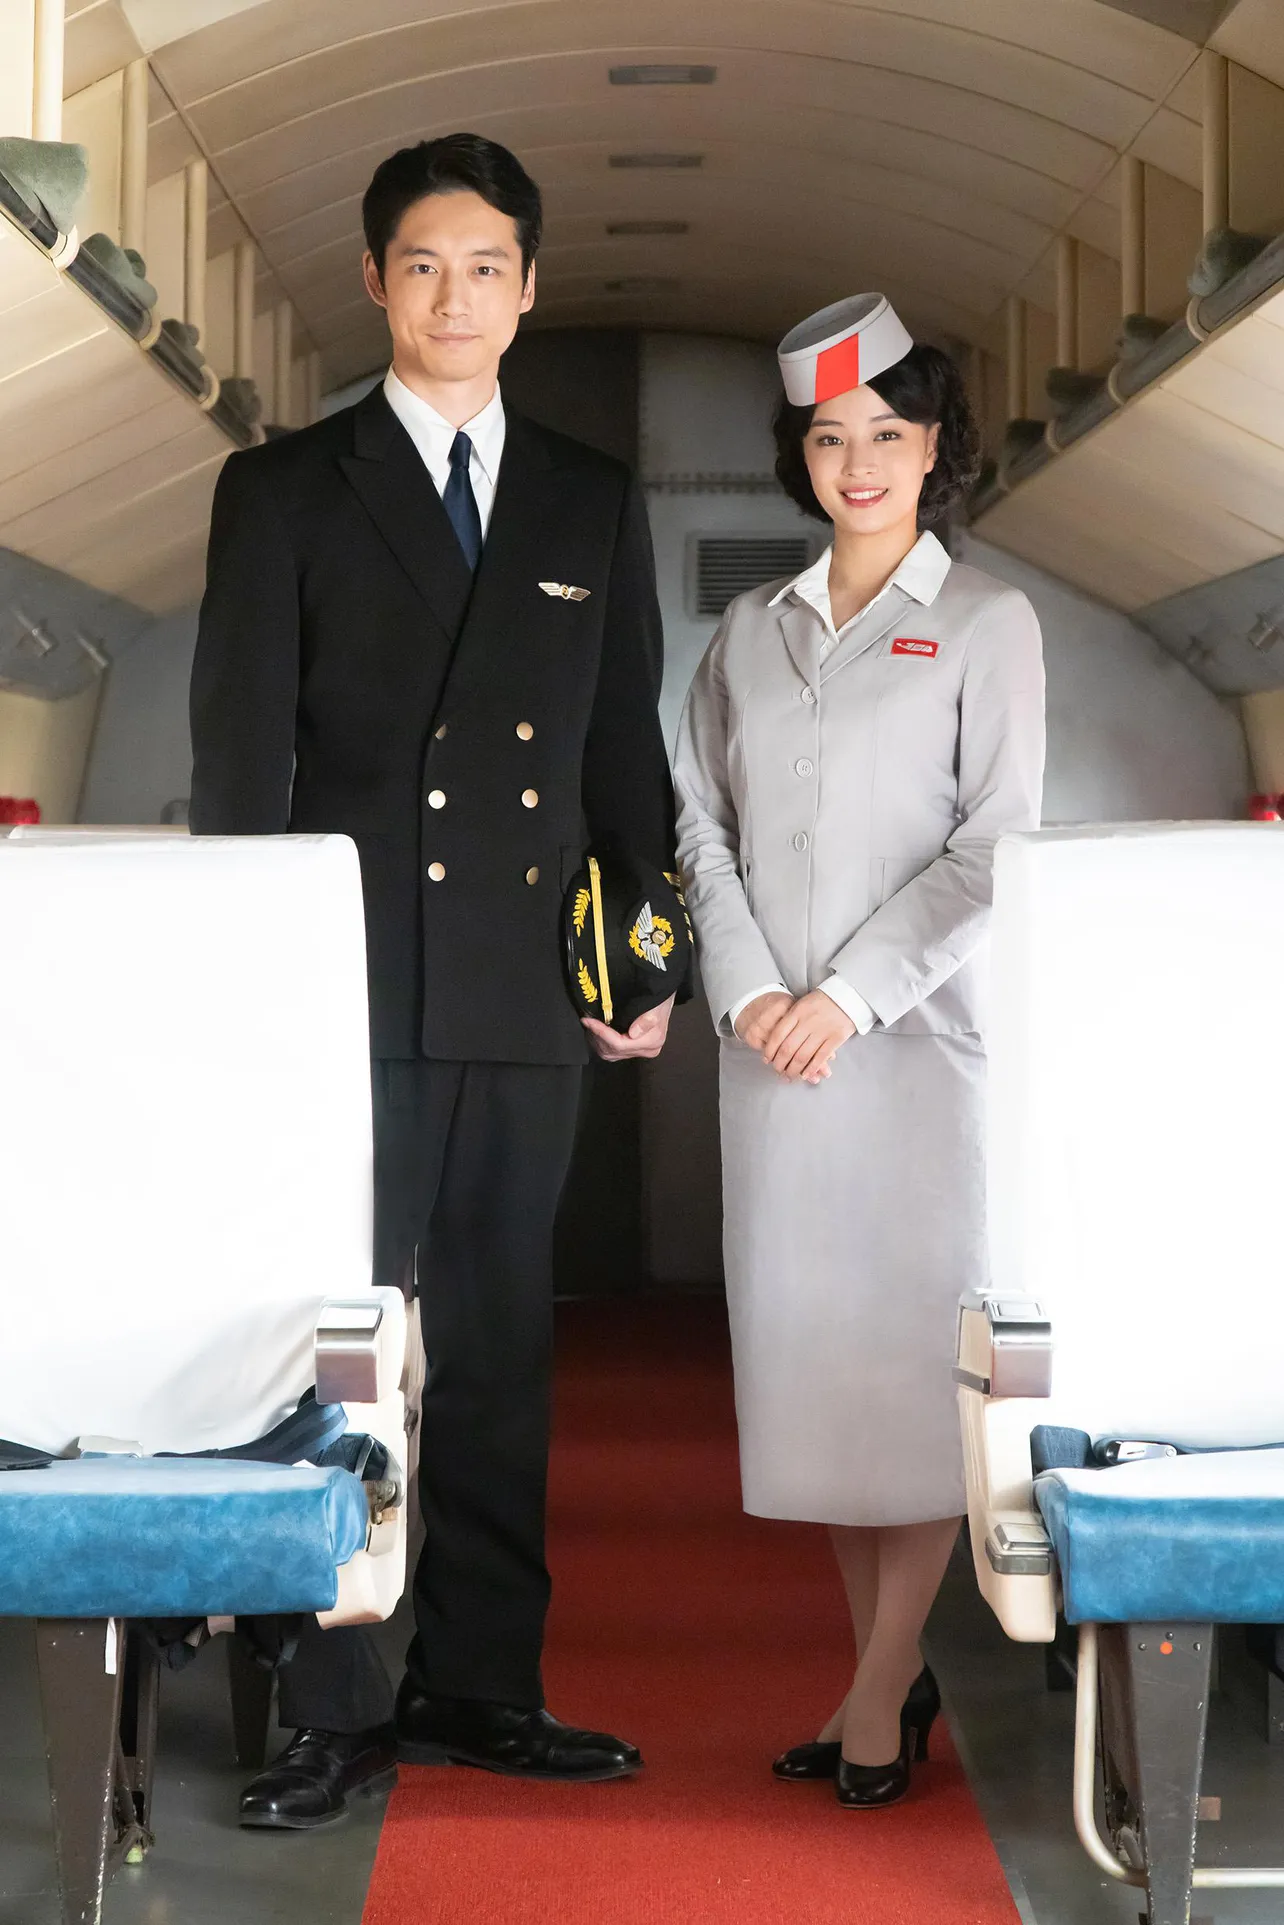 【写真を見る】パイロットの帽子を左手に携え、りりしい表情を見せる坂口健太郎